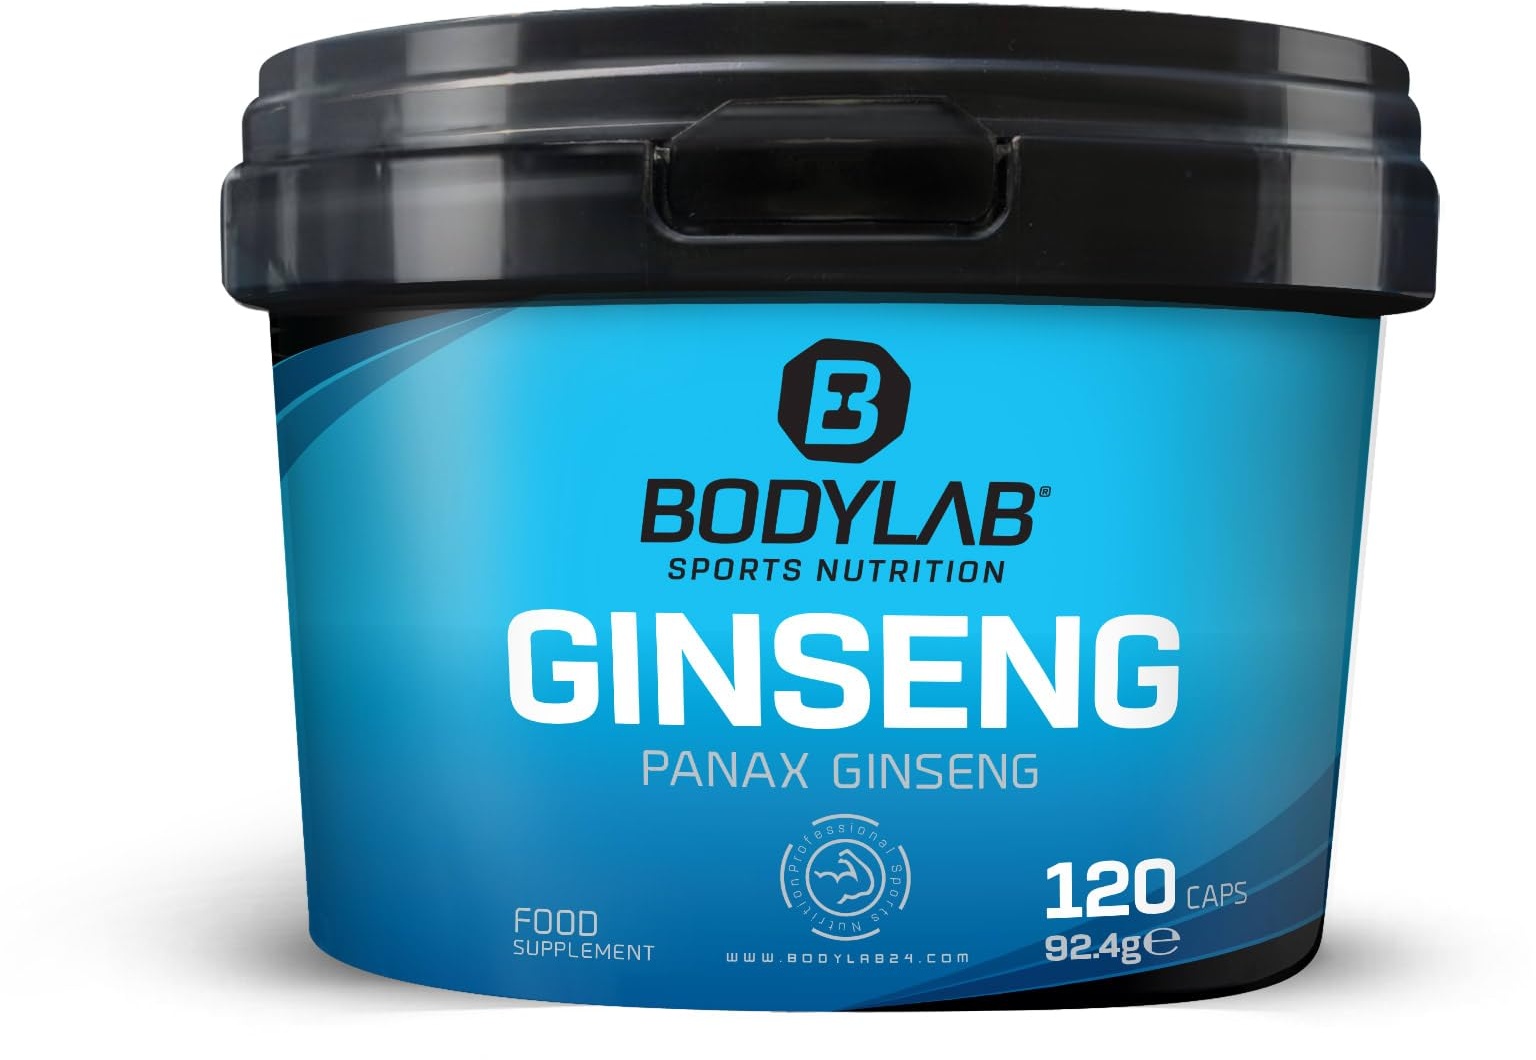 Bodylab24 Ginseng 120 Kapseln, mit 550mg reinem Panax Ginseng Extrakt pro Kapsel, ideal als Ergänzung bei starker körperlicher Belastung, jede Packung enthält 120 Portionen